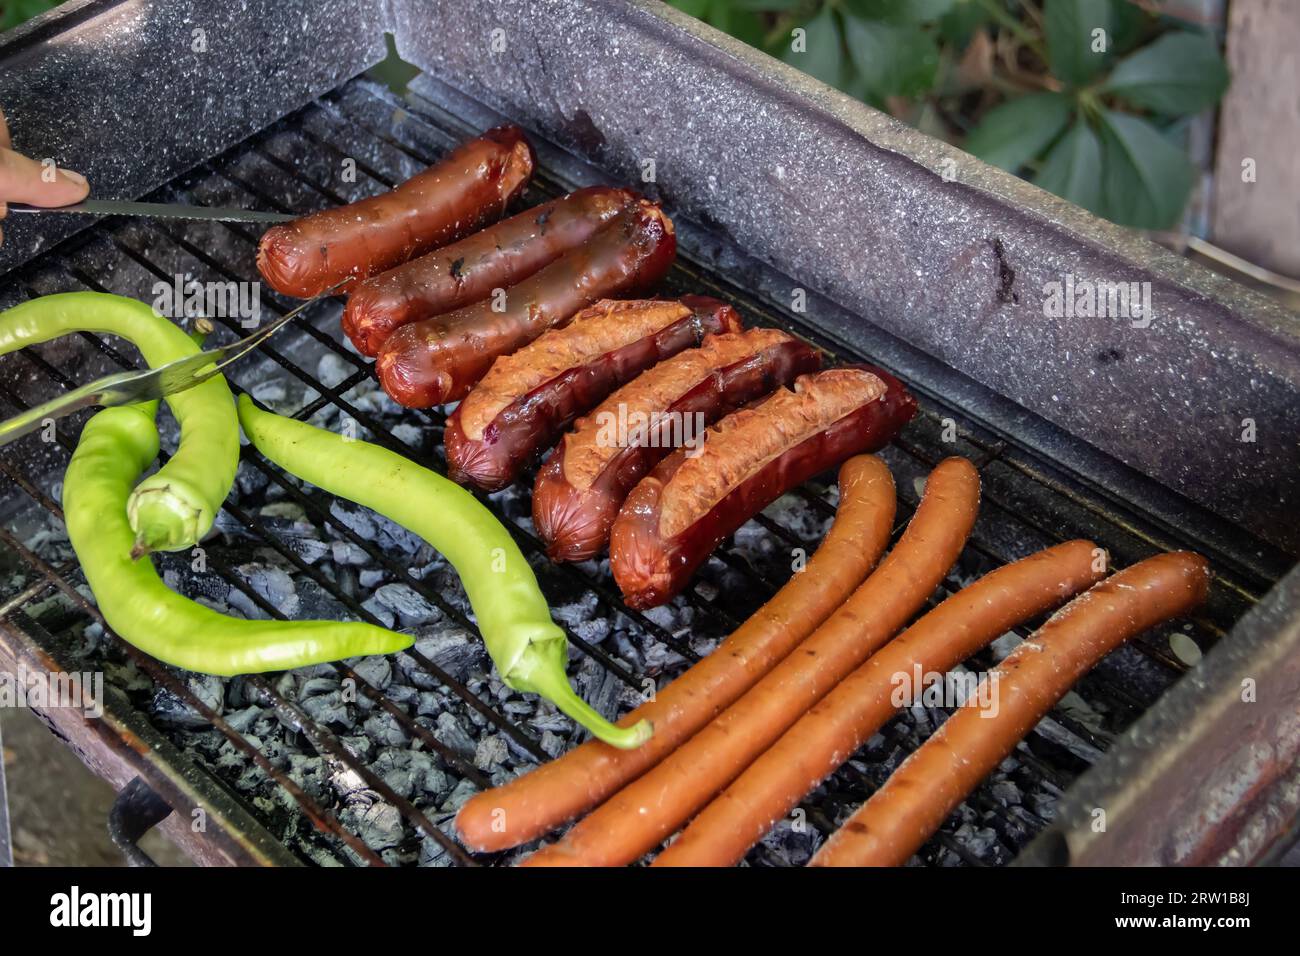 Barbecue au charbon barbecue Grill dans l'arrière-cour de Country Side, préparer, griller des saucisses et des poivrons verts sur le gril avec clôture en bois en arrière-plan Banque D'Images